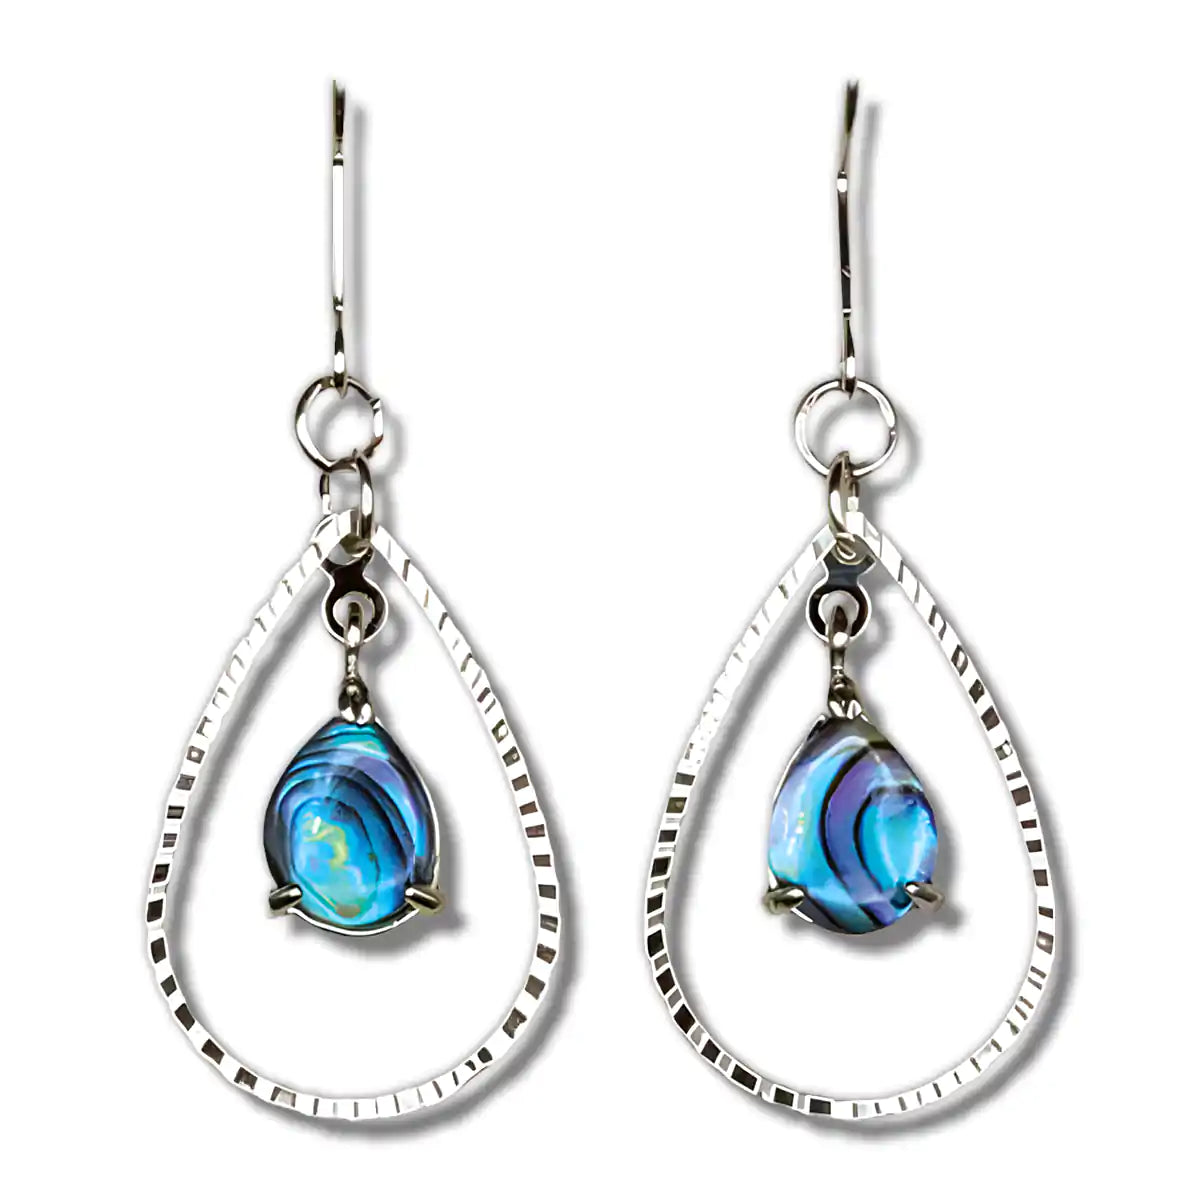 Glacier pearle vibrant earrings